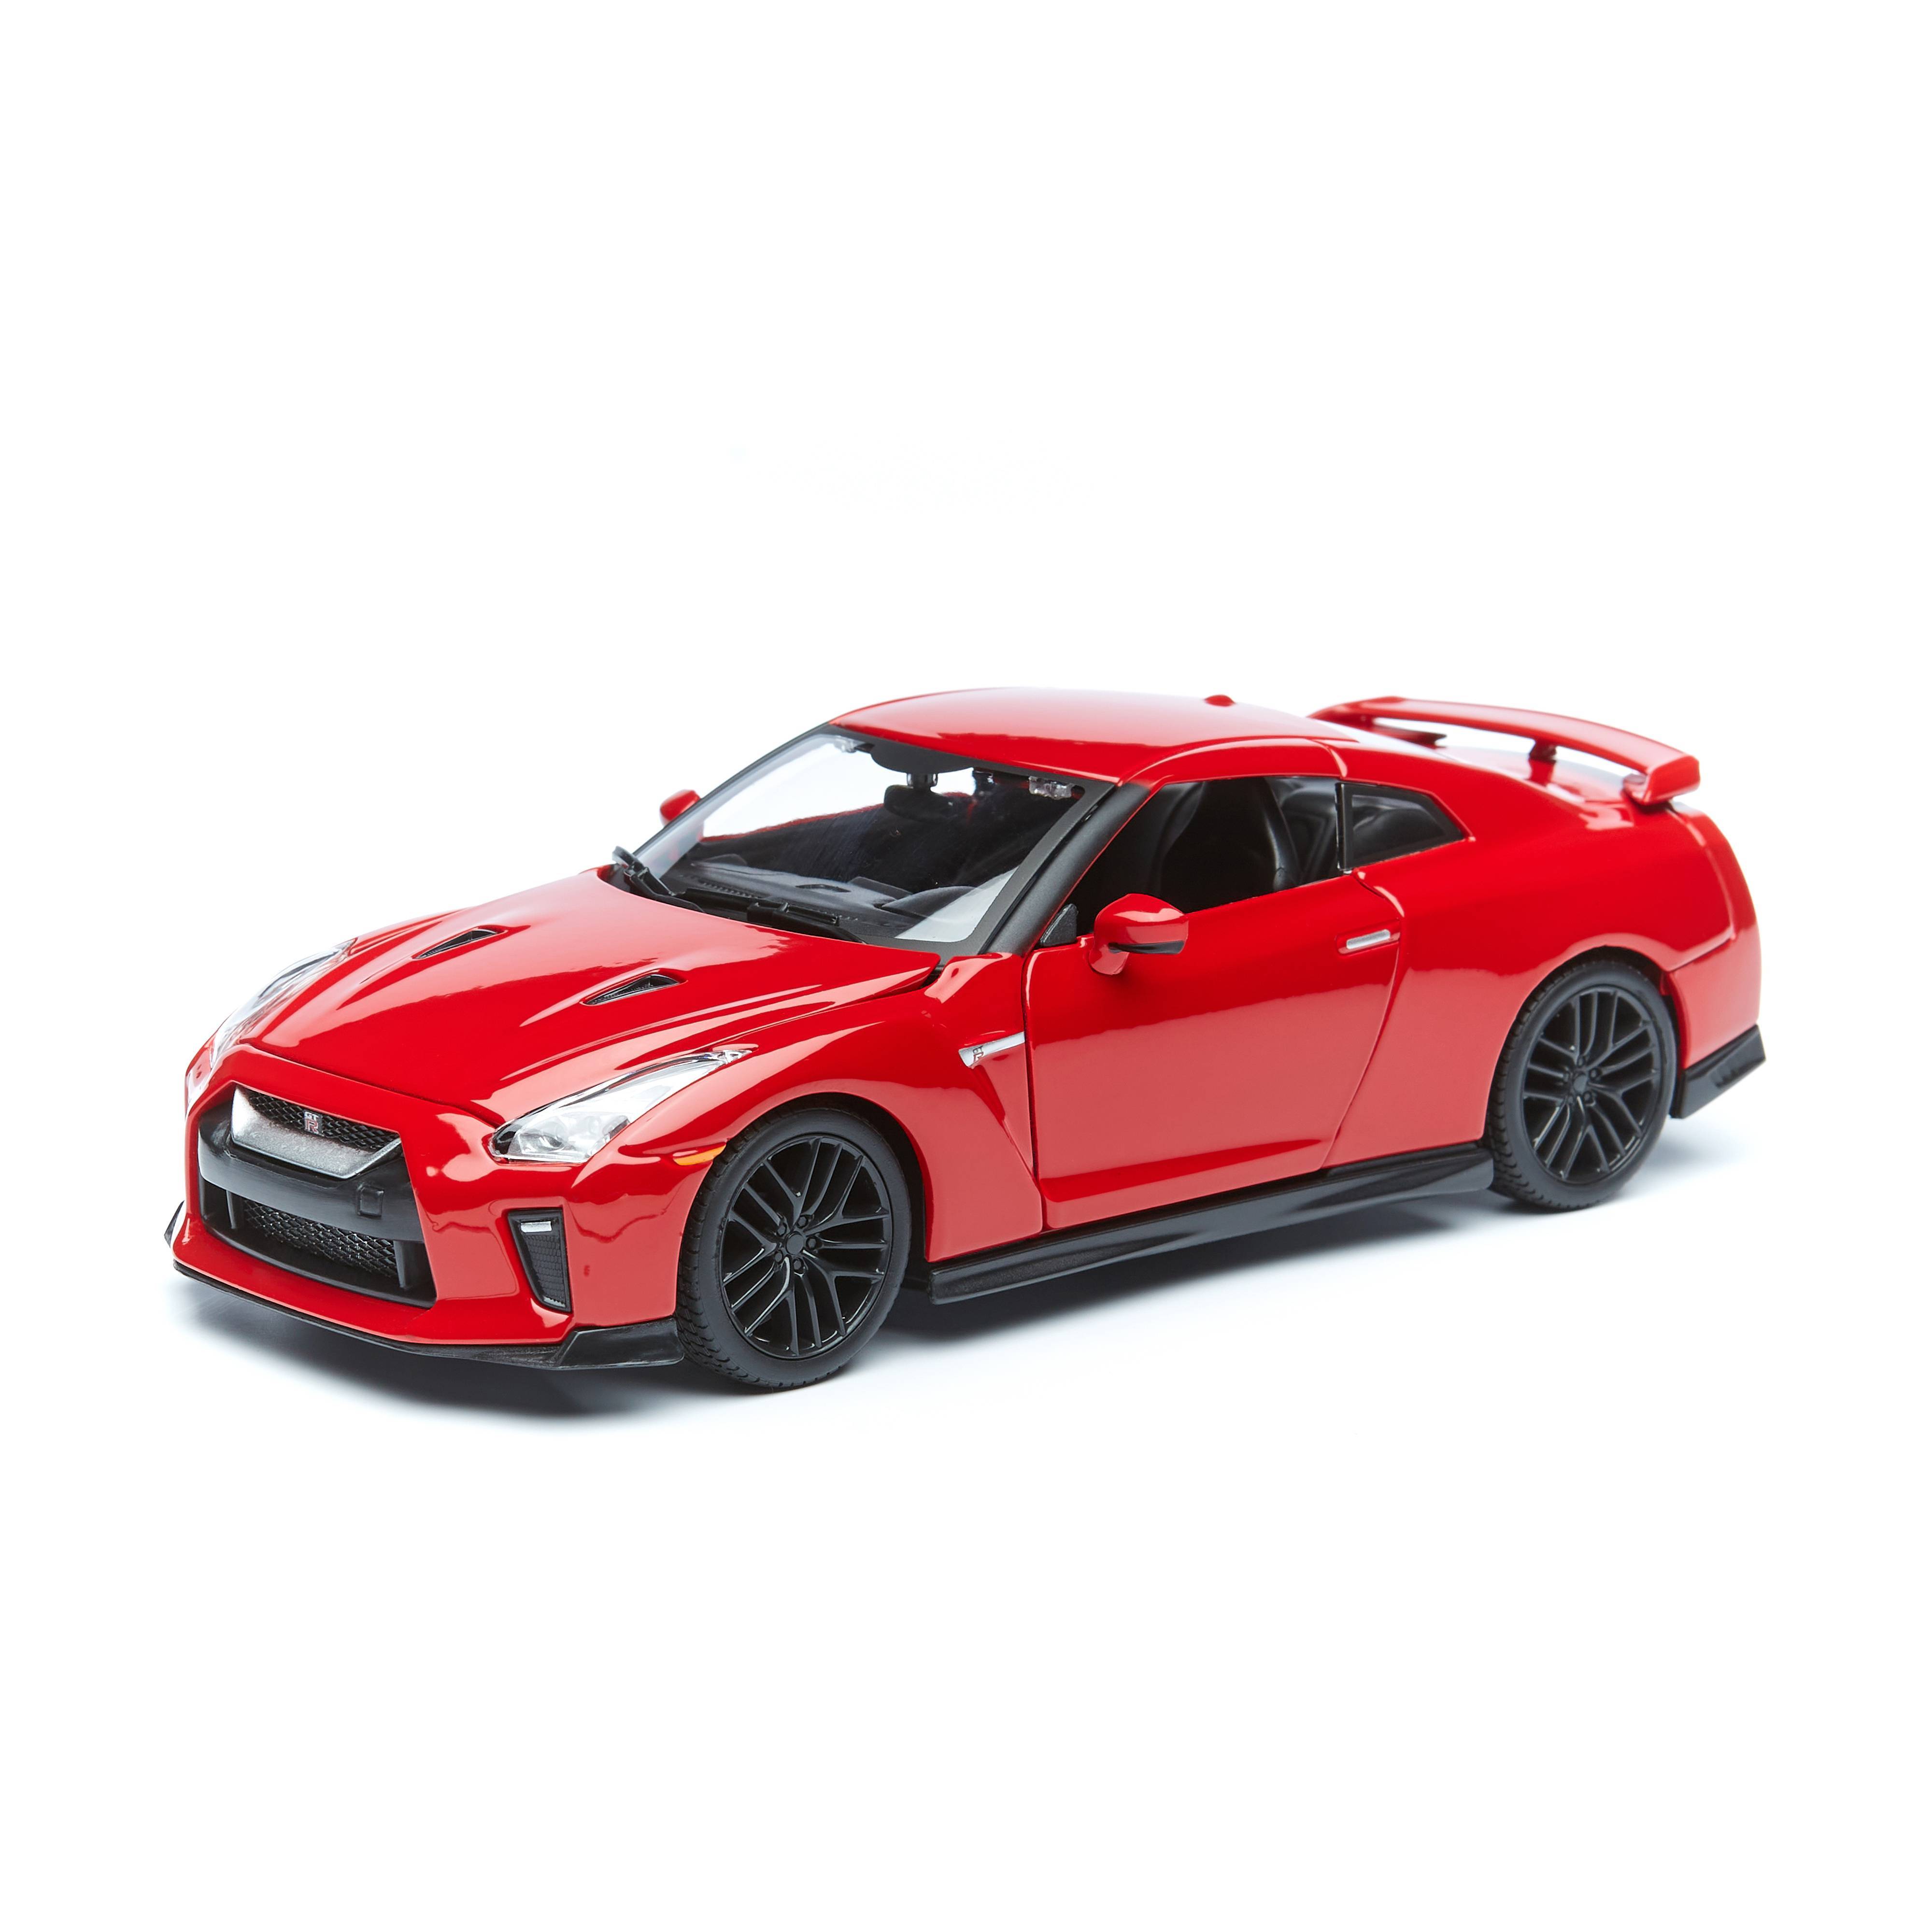 Машинка металлическая Bburago 2017 Nissan GT-R, 1:24, красный машинка металлическая bburago bugatti bolide 1 18 синяя 18 11047bu